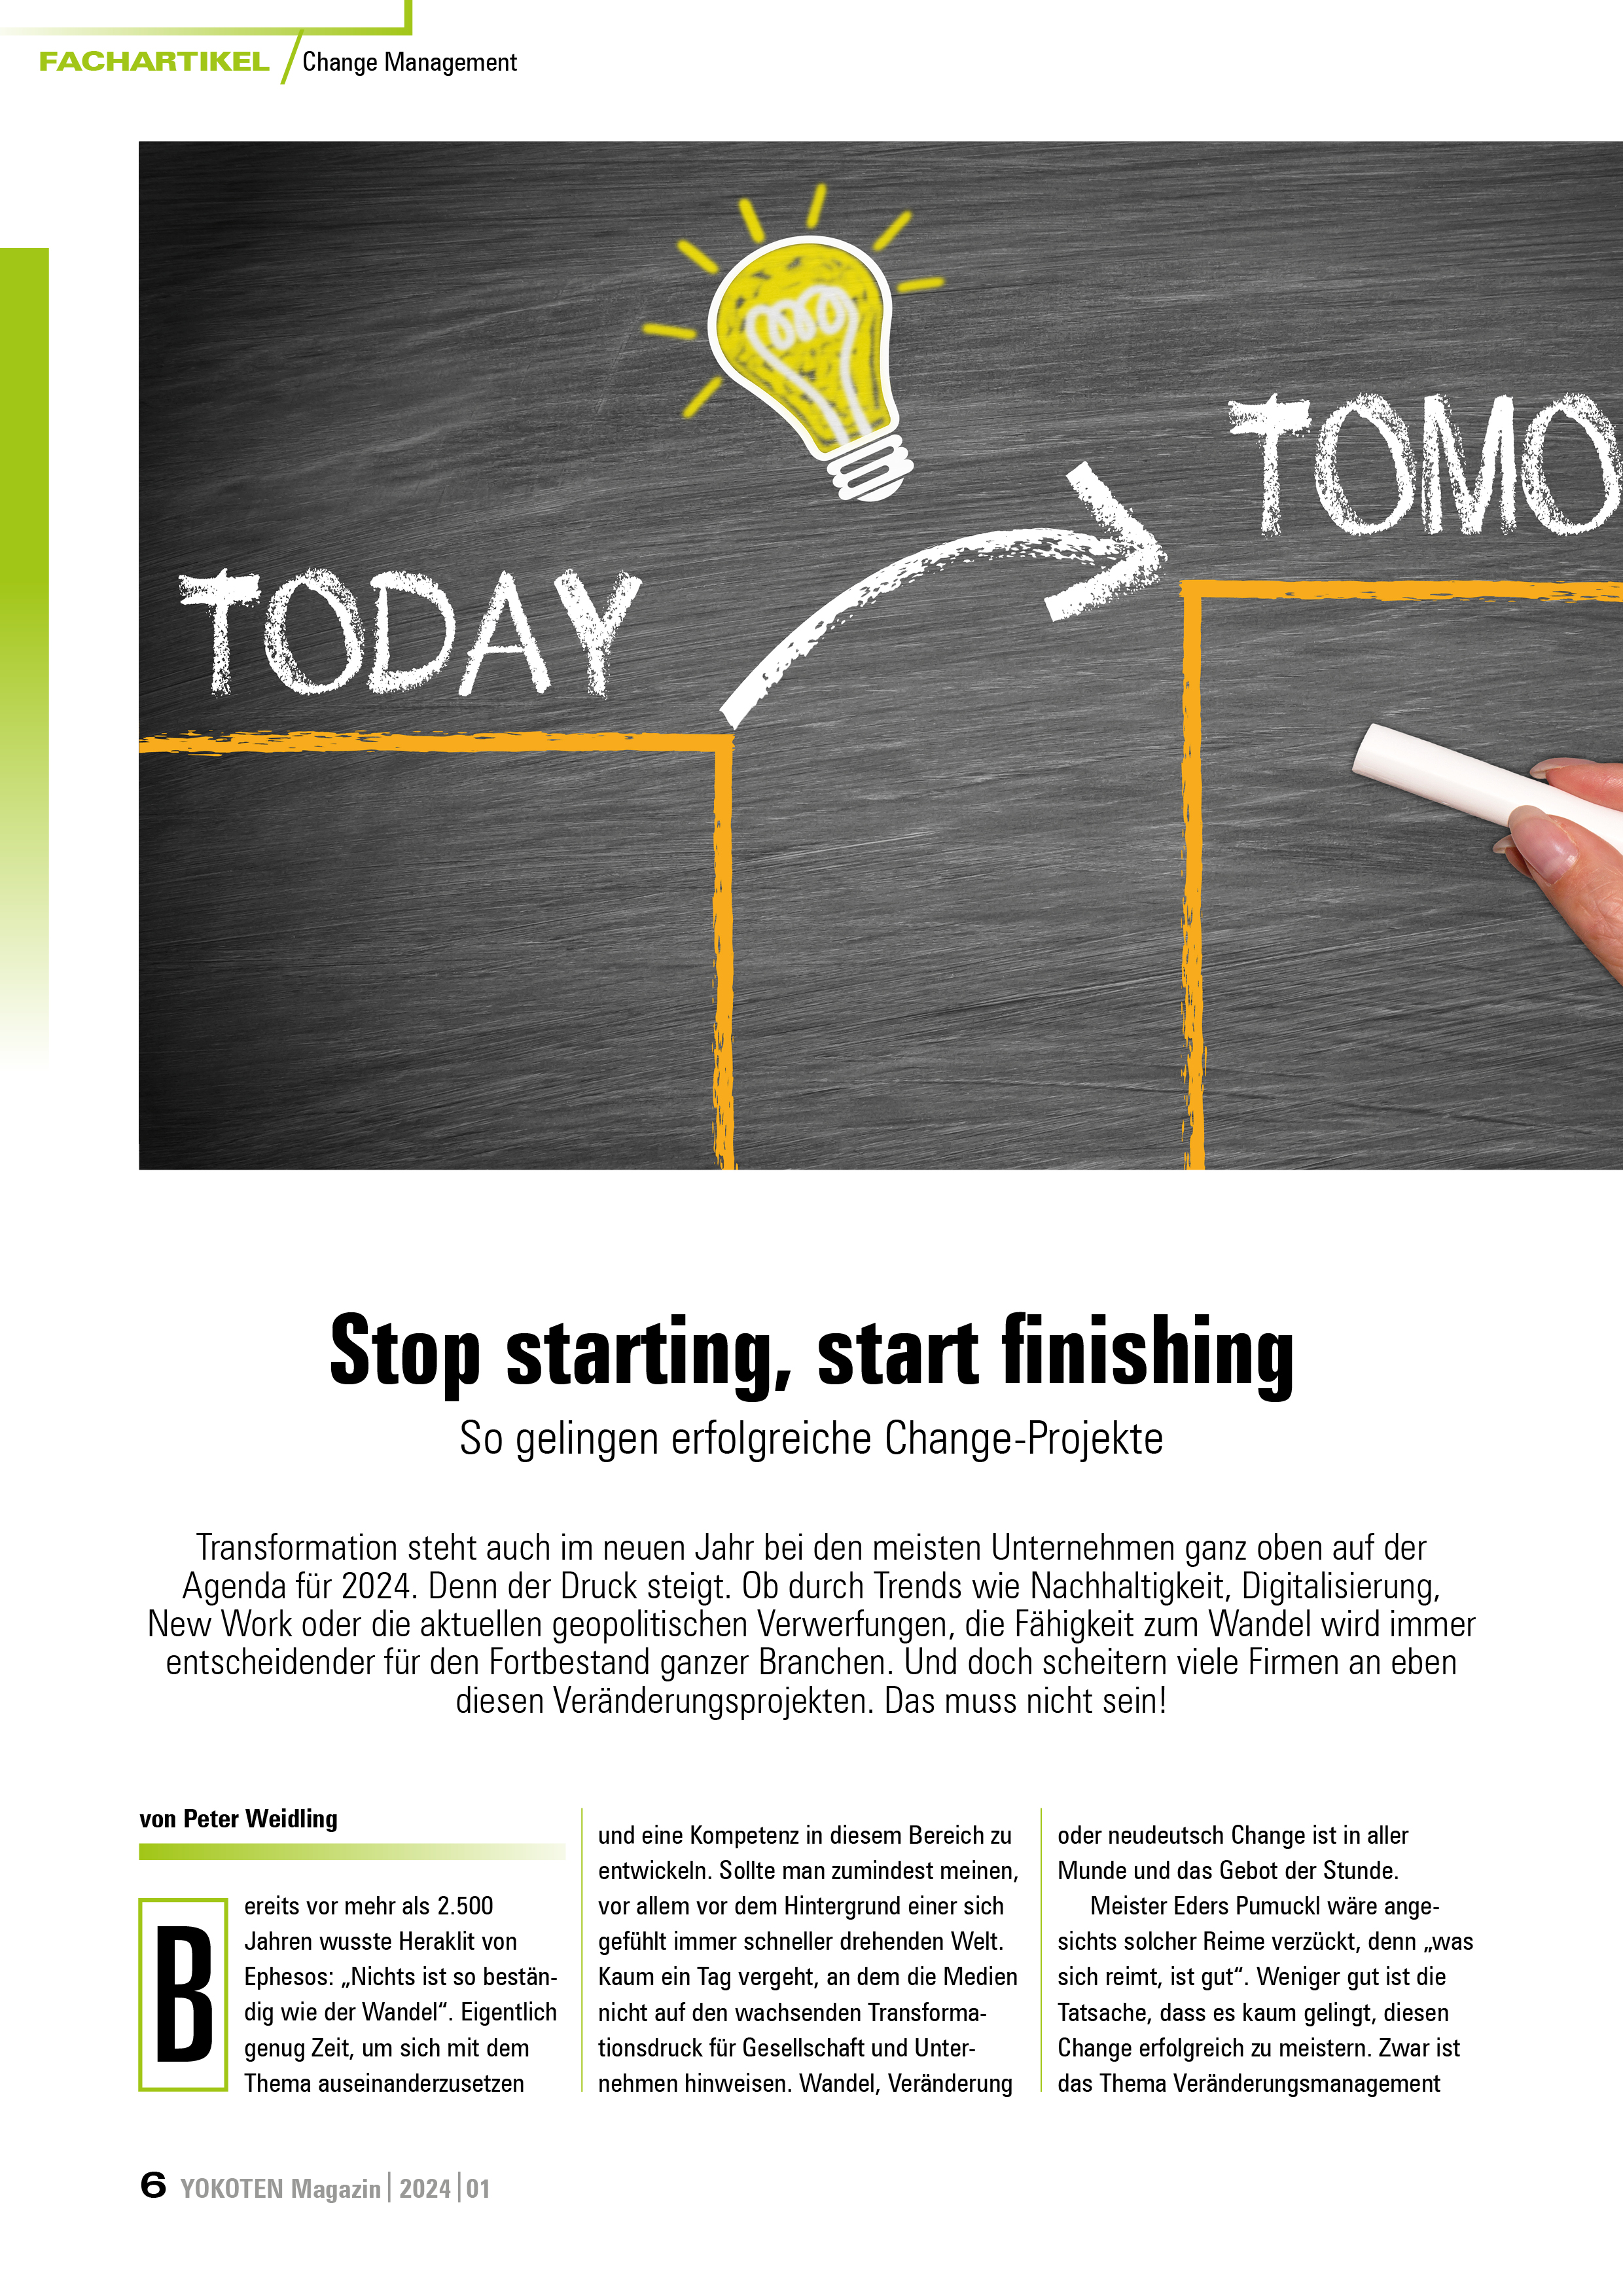 YOKOTEN-Artikel: Stop starting, start finishing